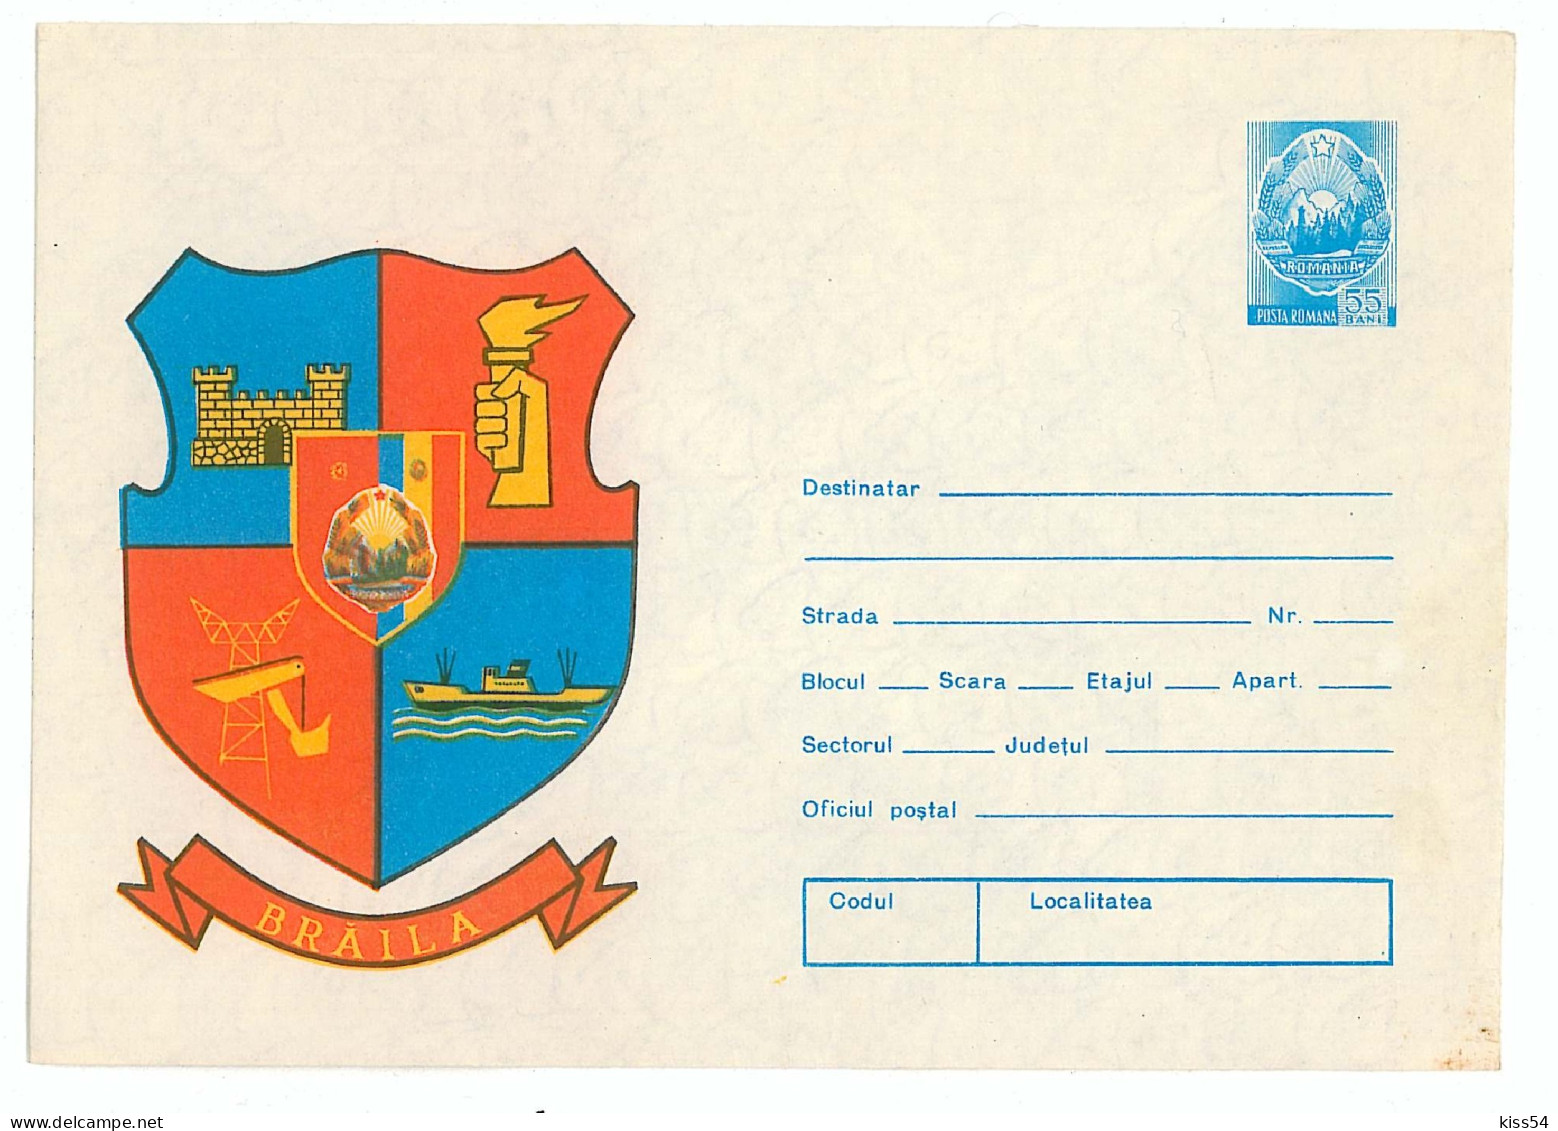 IP 76 - 157 SHIP, Heraldry BRAILA - Stationery - Unused - 1976 - Postal Stationery